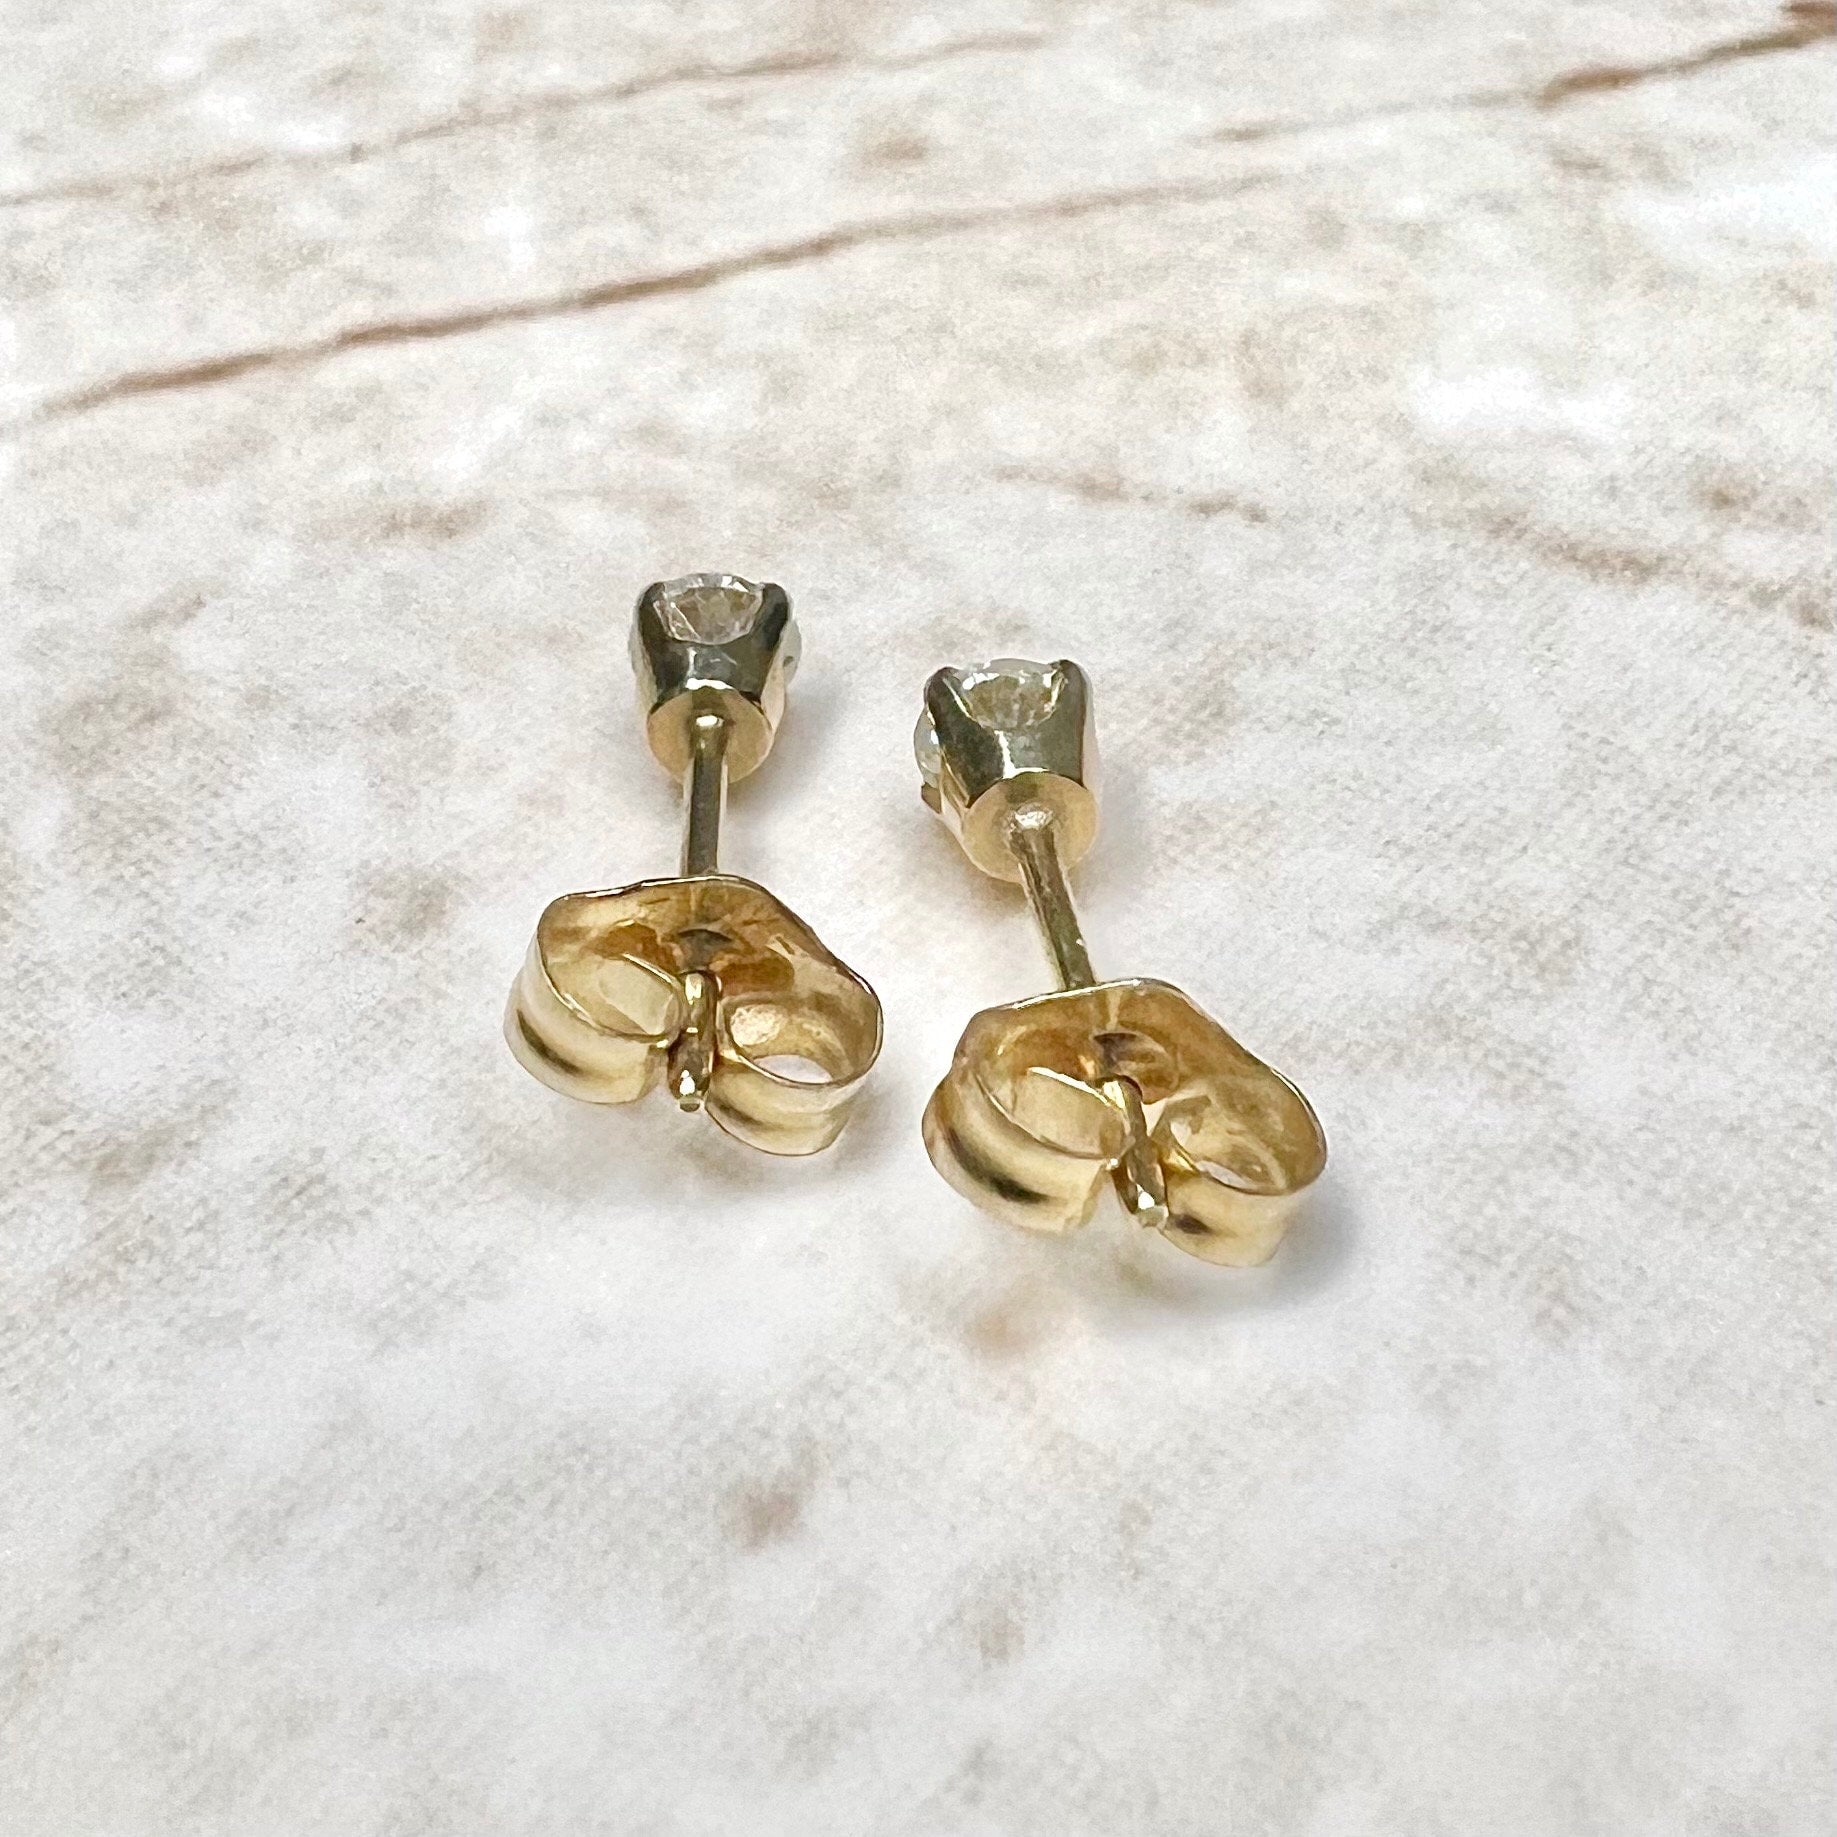 14K Round Diamond Stud Earrings 0.20 CTTW - 14K Yellow Gold Diamond Studs - 4 Prong Diamond Studs - Gold Diamond Earrings - Gift For Her